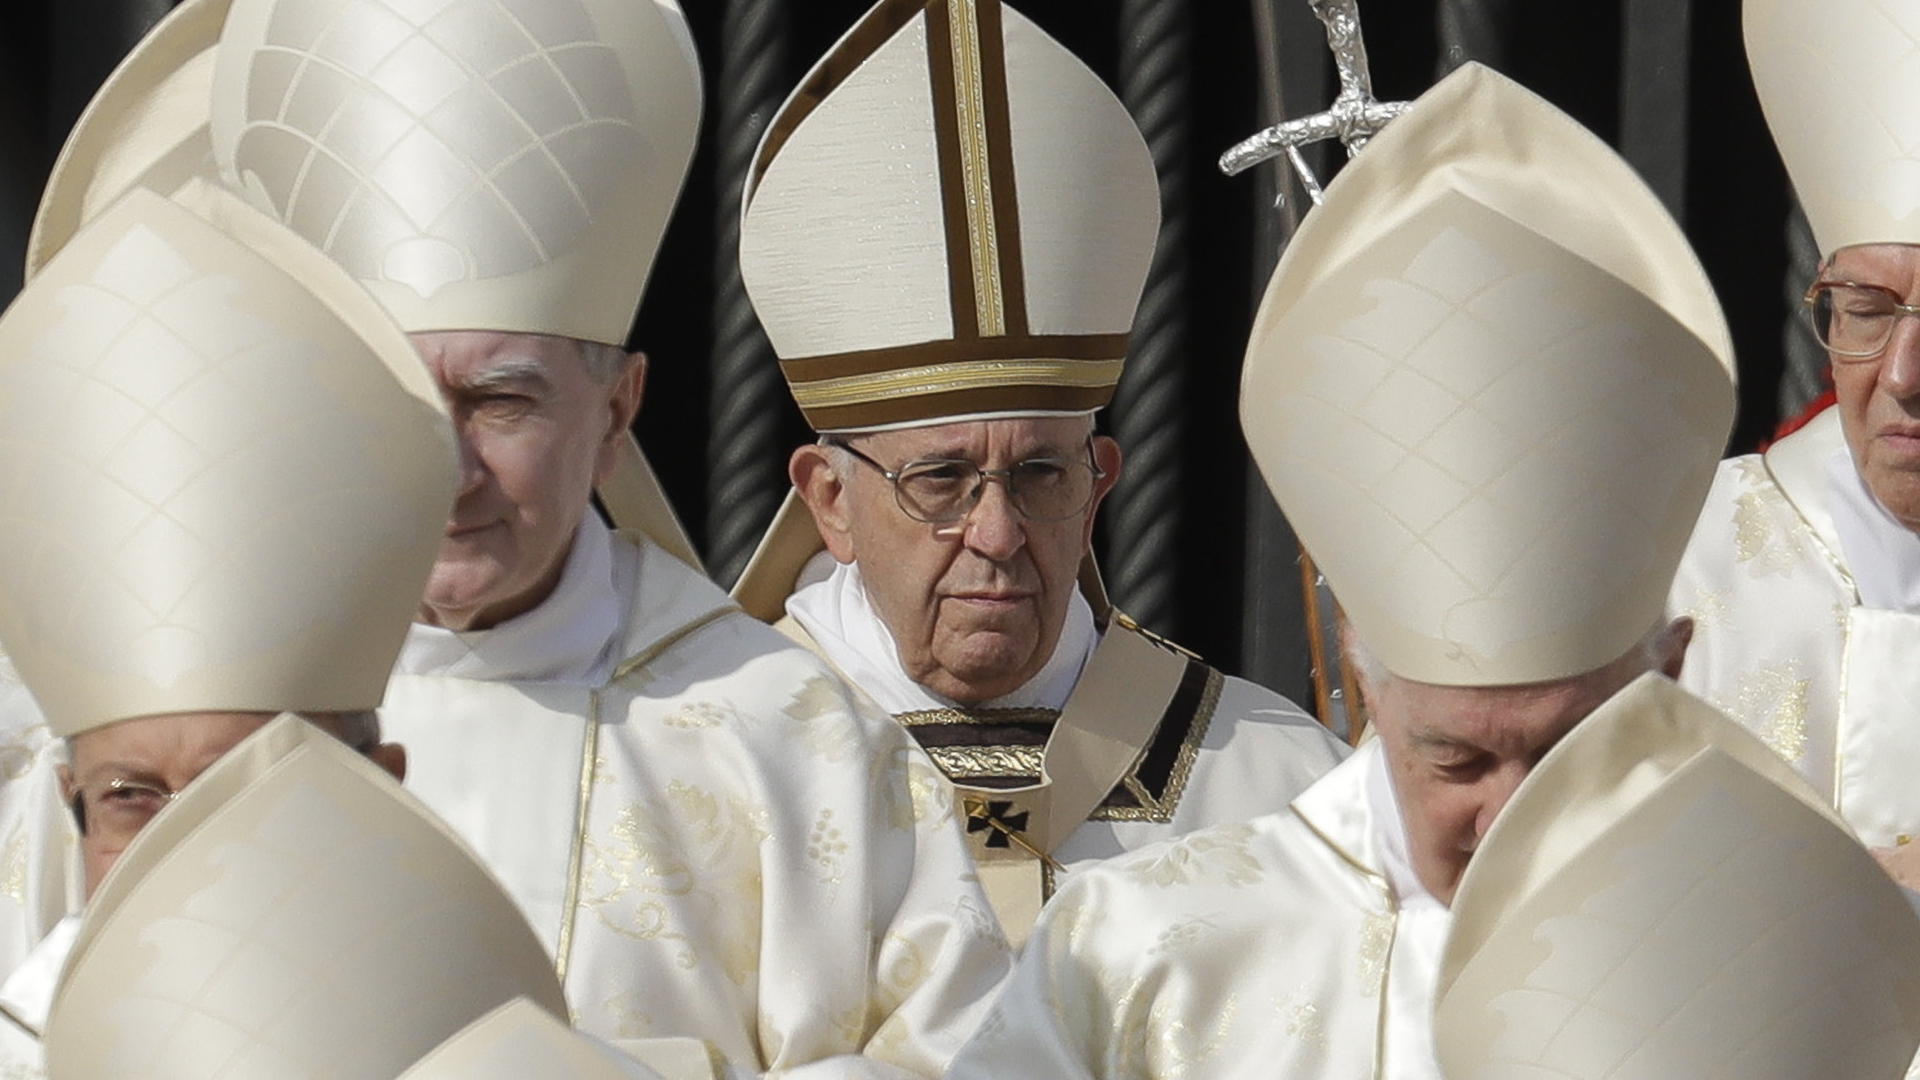 Papst Franziskus bei der heiligsprechung in Rom | Bildquelle: dpa